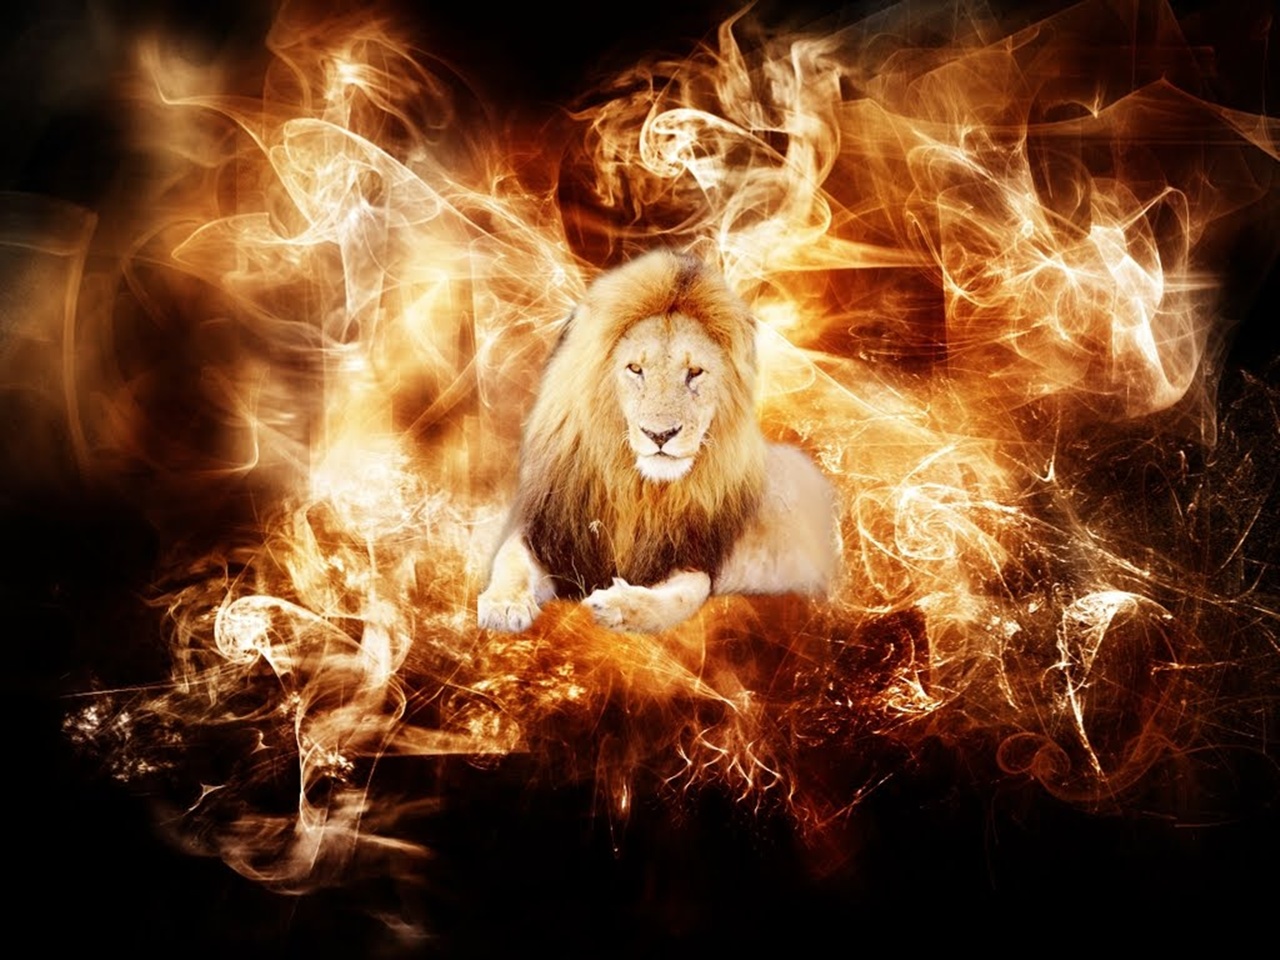 fond d'écran de lion de feu,flamme,feu,chaleur,mythologie,police de caractère